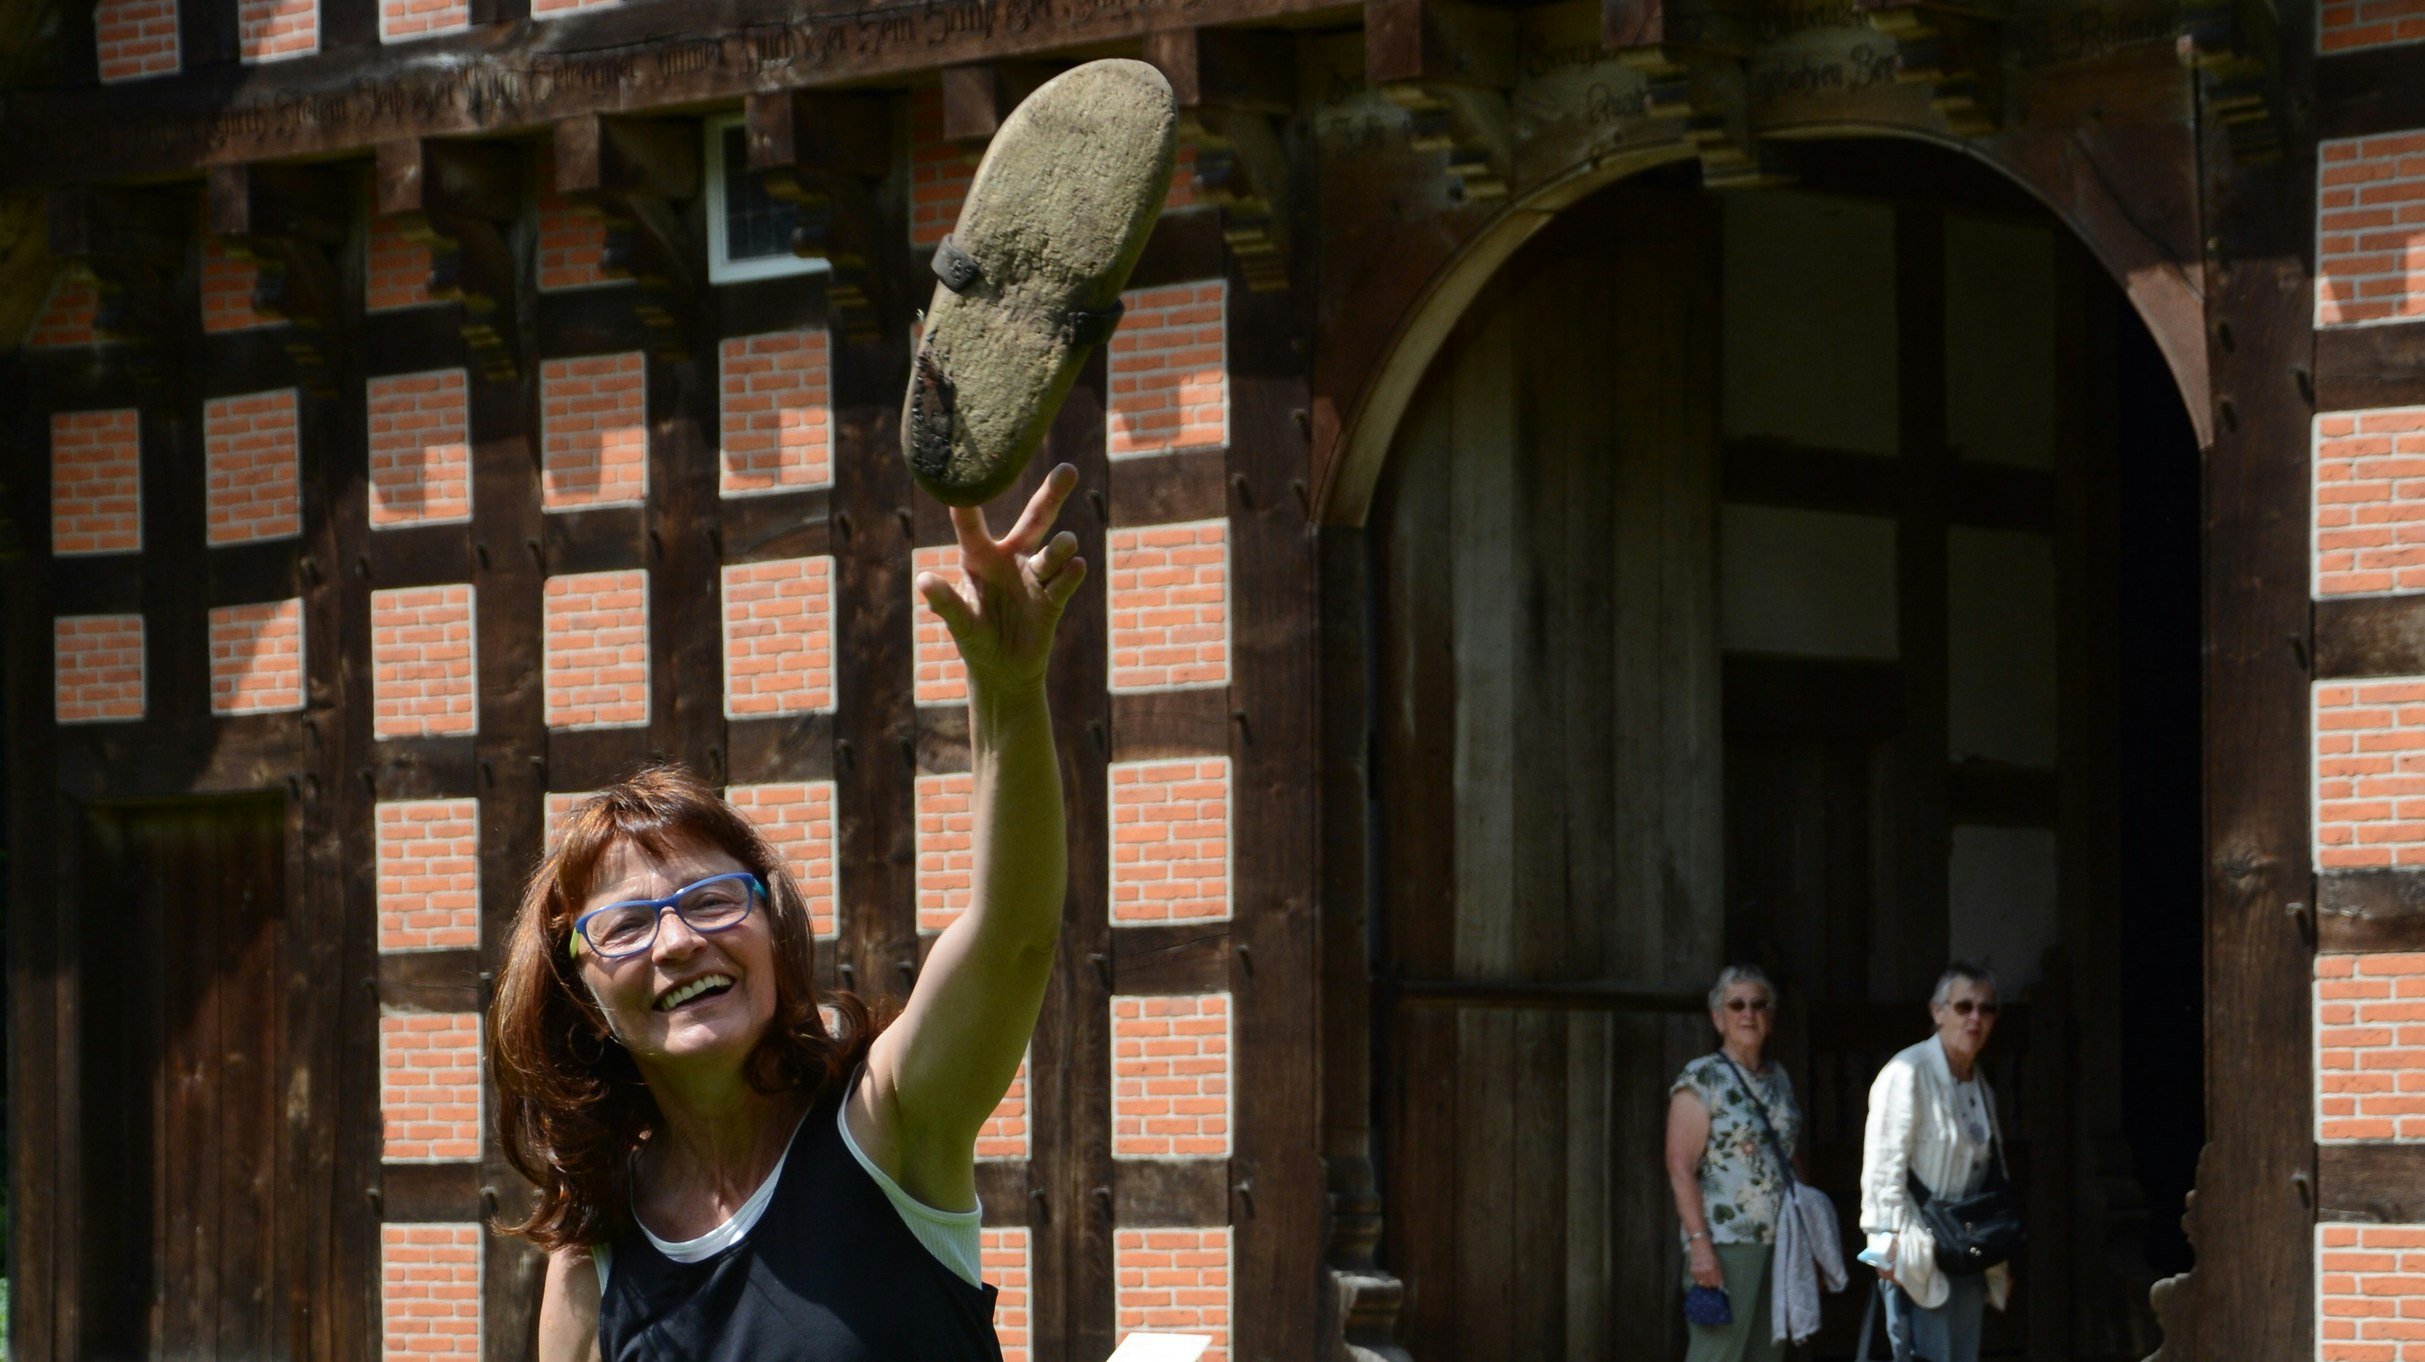 Neues Angebot: Museumspädagogin Maria Thien zeigt mit ihren Kolleginnen verschiedene Aktionen aus der füheren Alltagskultur, unter anderem Spiele wie das Holzschuhwerfen. Foto: Hermes